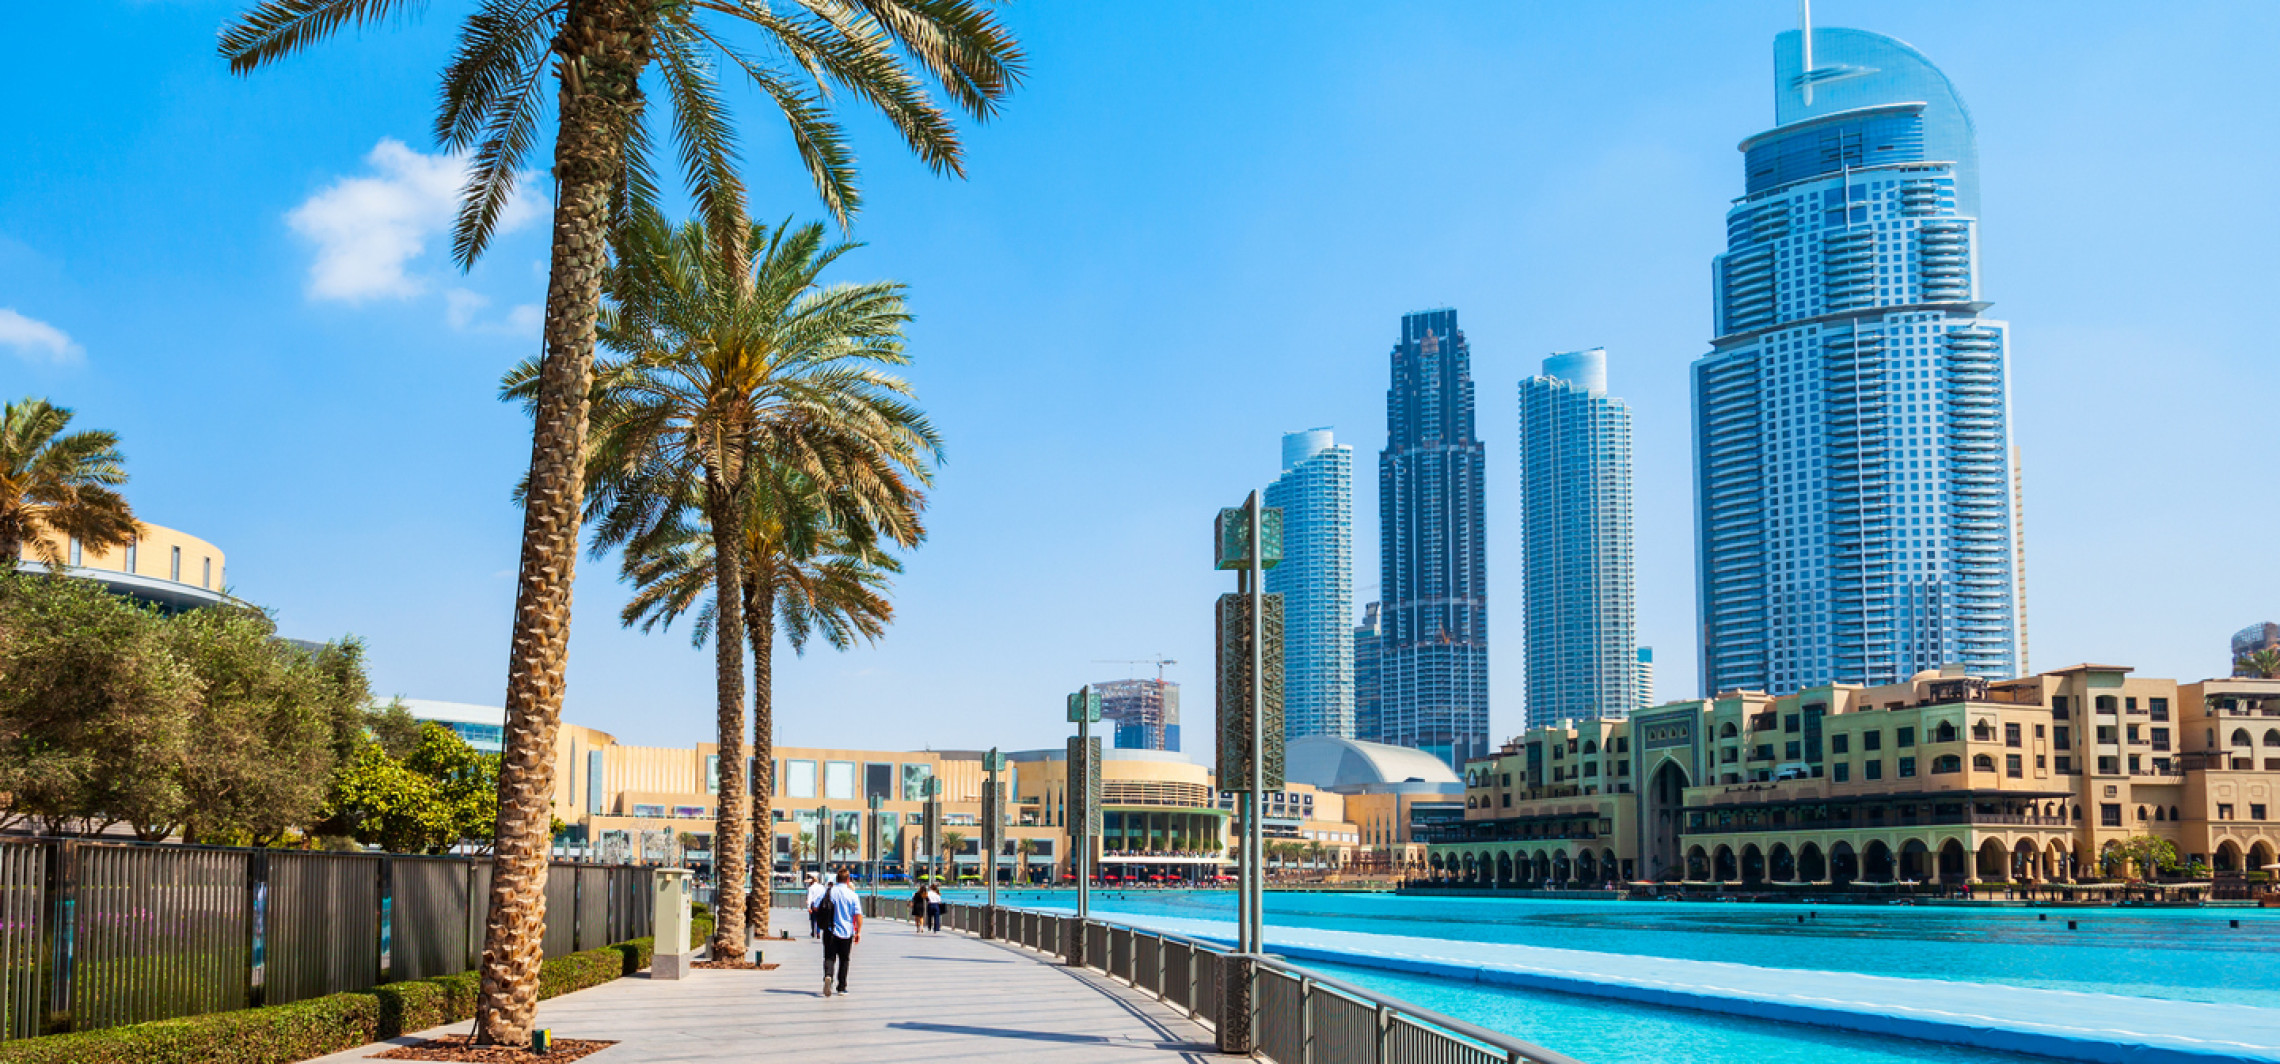 Region - Dubaj - wycieczka pełna luksusu -  Luksusowe hotele i zapierające dech w piersiach widoki